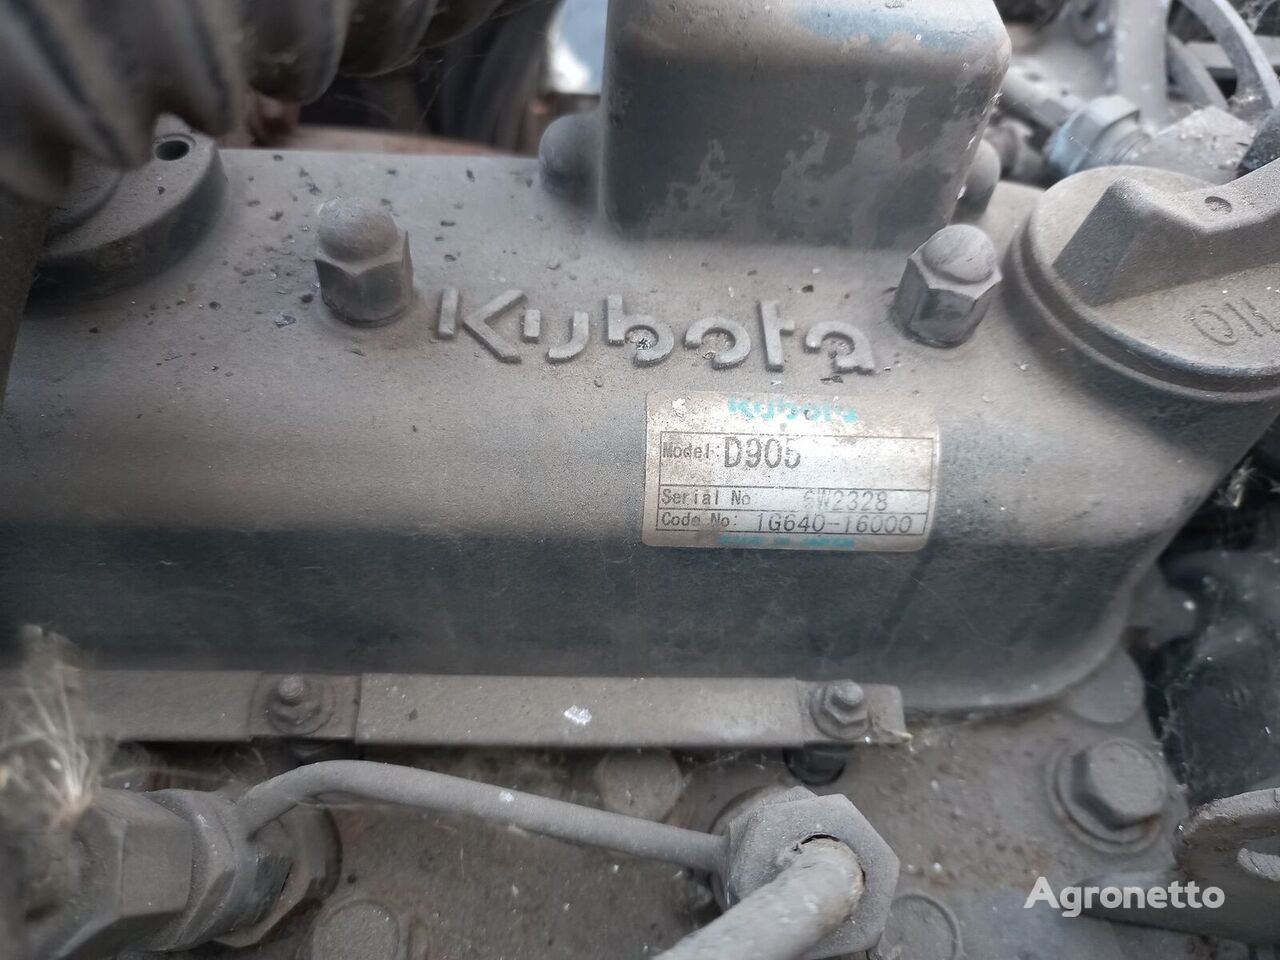 发动机 Kubota d905 seria 6w2328